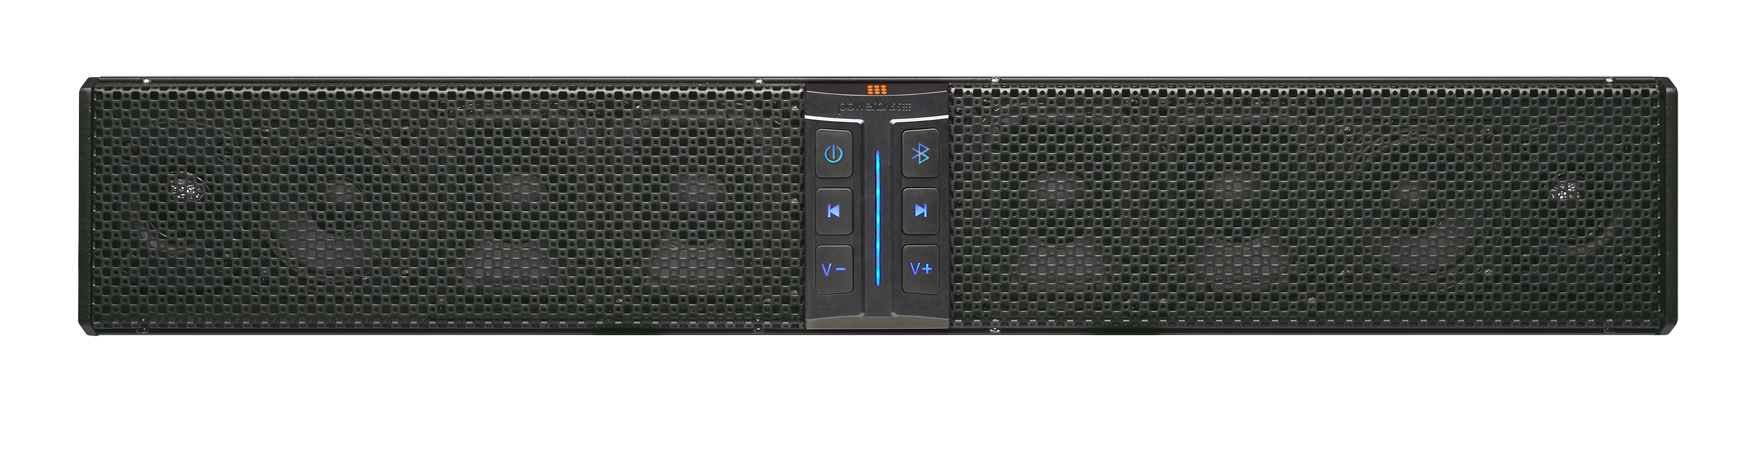 Powerbass XL-850 Sound bar